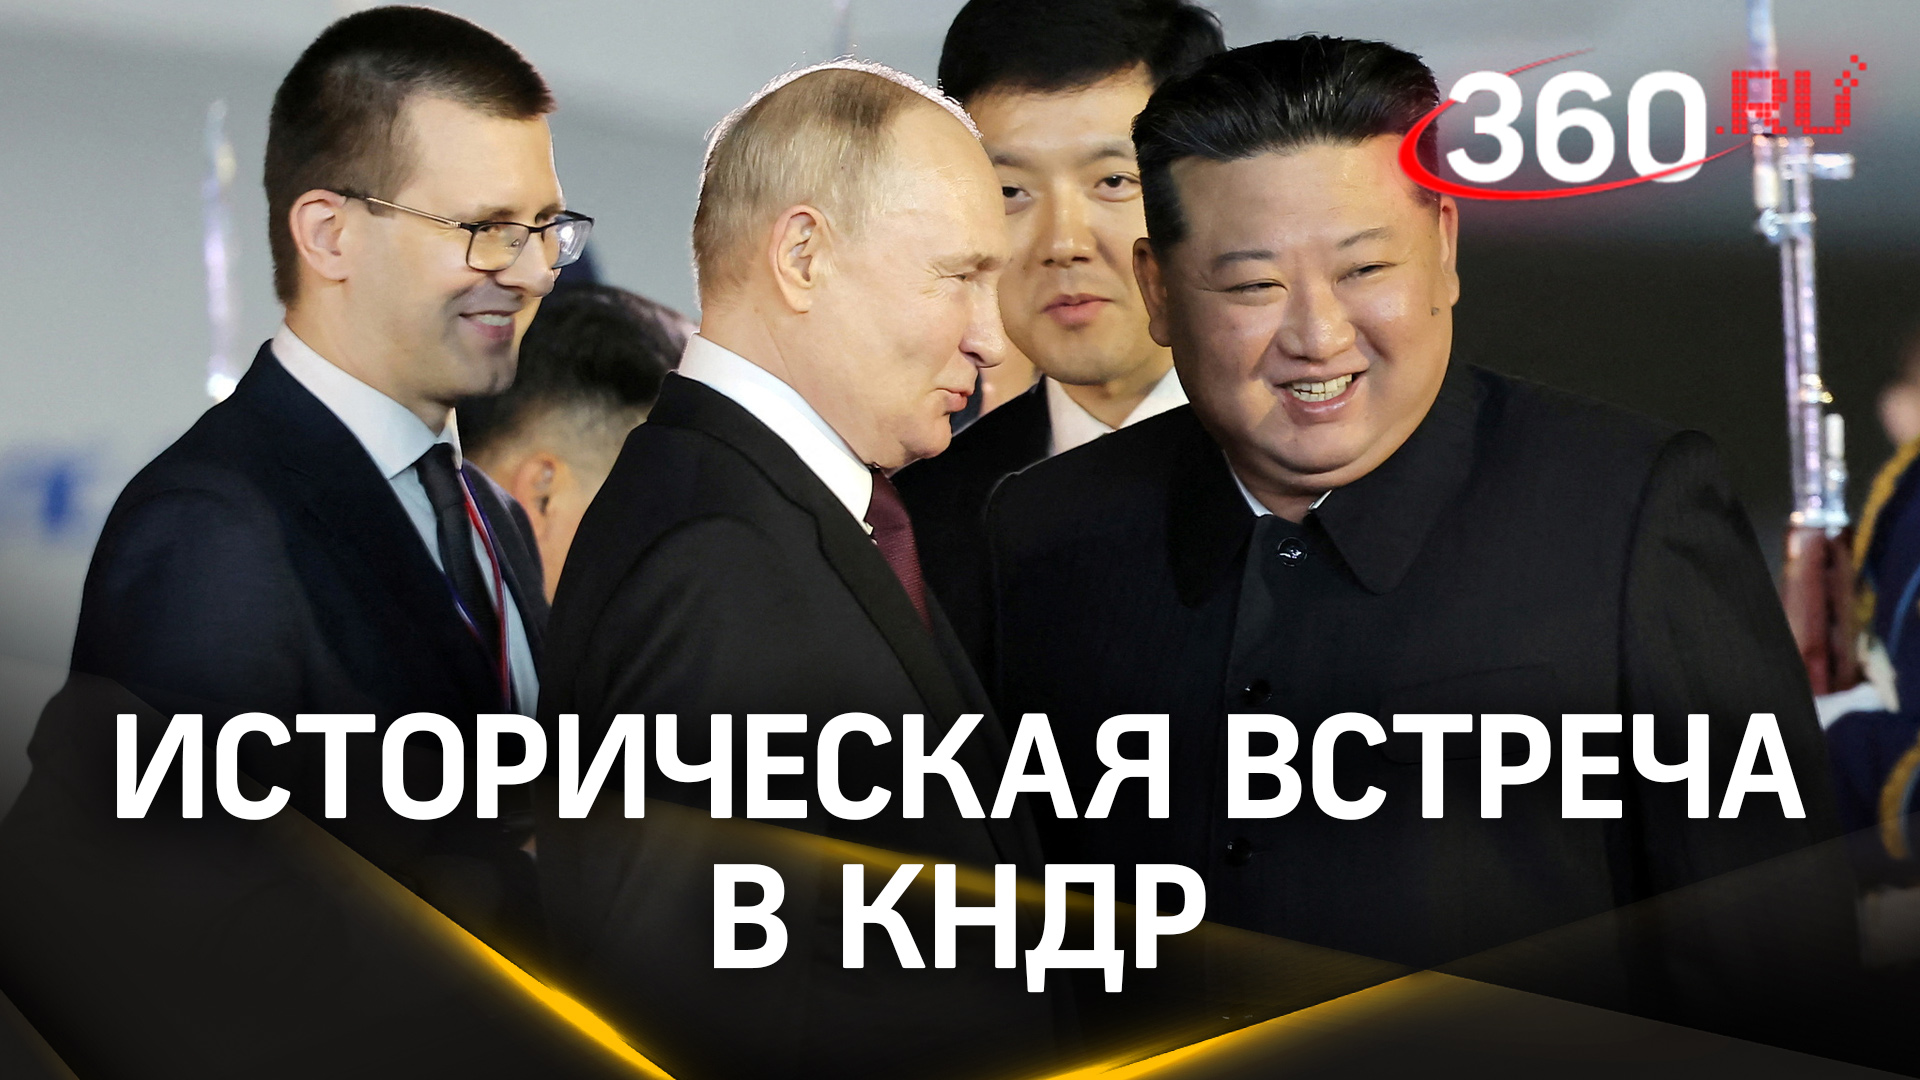 Историческая встреча в сердце Северной Кореи: Владимир Путин и Ким Чен Ын обсудят будущее двух стран